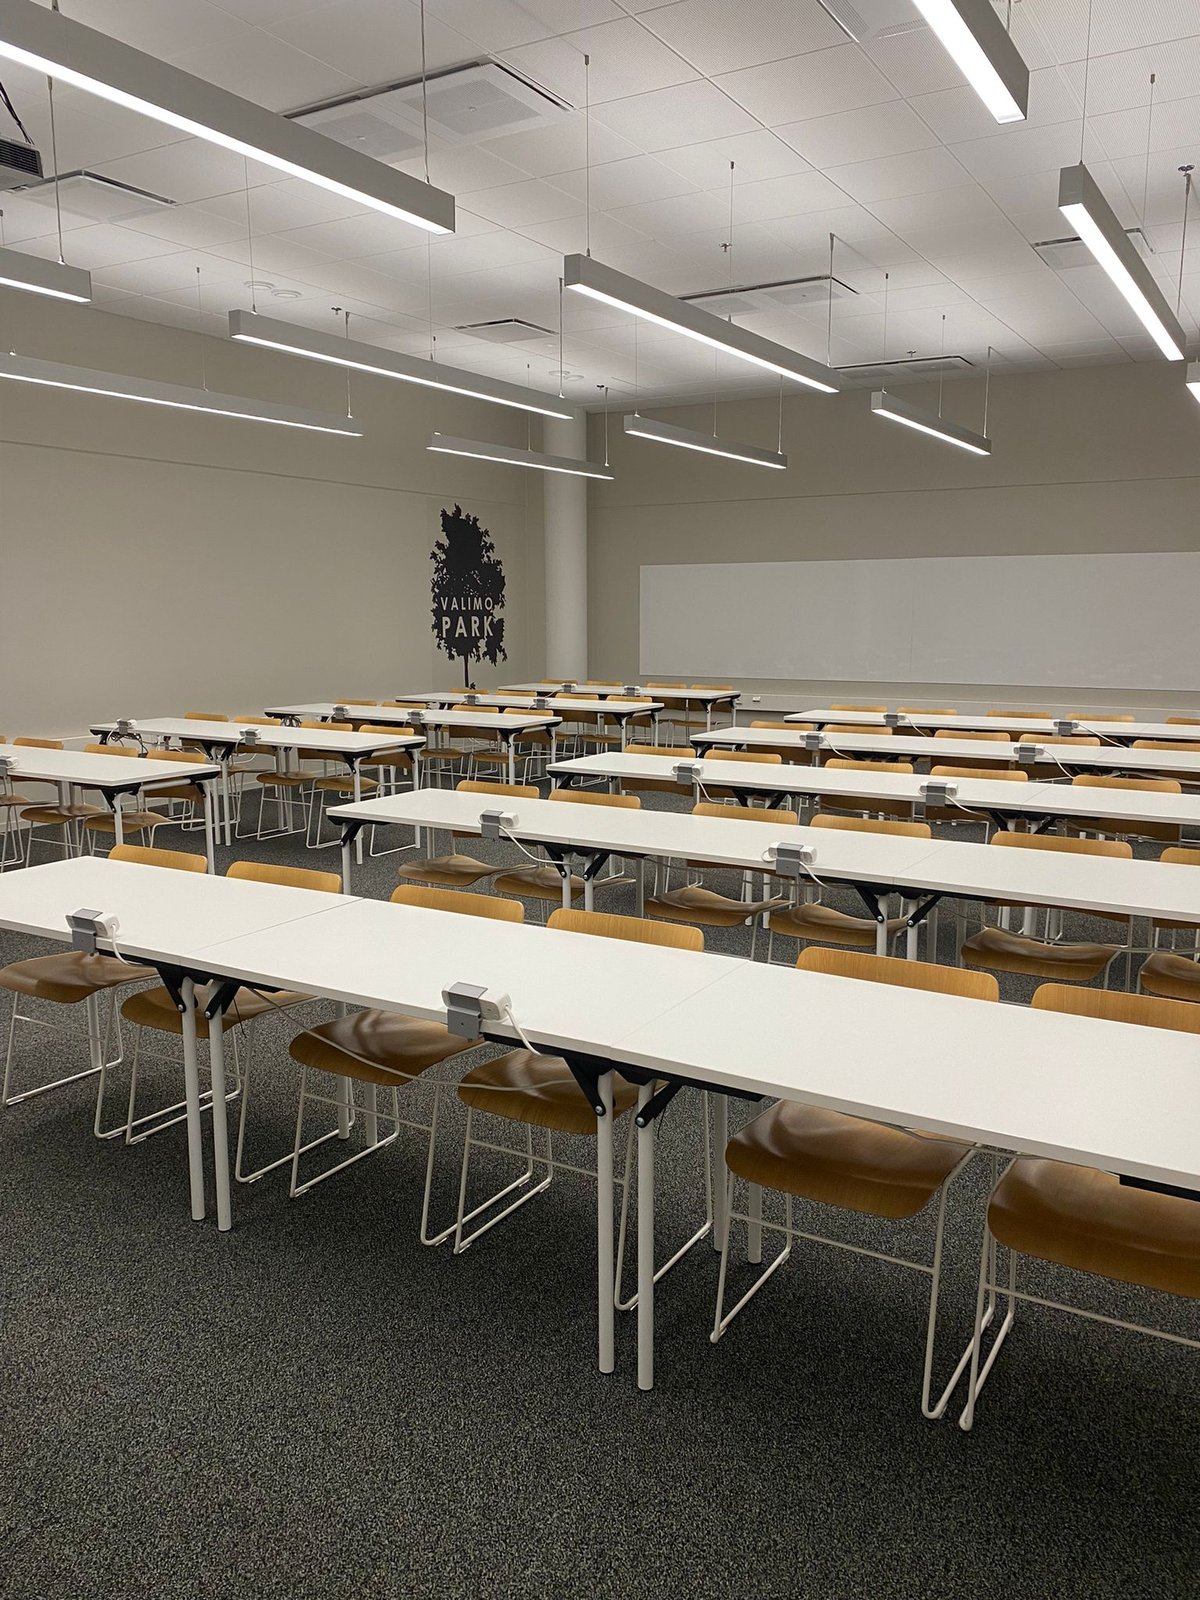 Valimo Parkin koulutustila luokkamuodossa, pitkiä pöytiä rivissä tuoleineen.